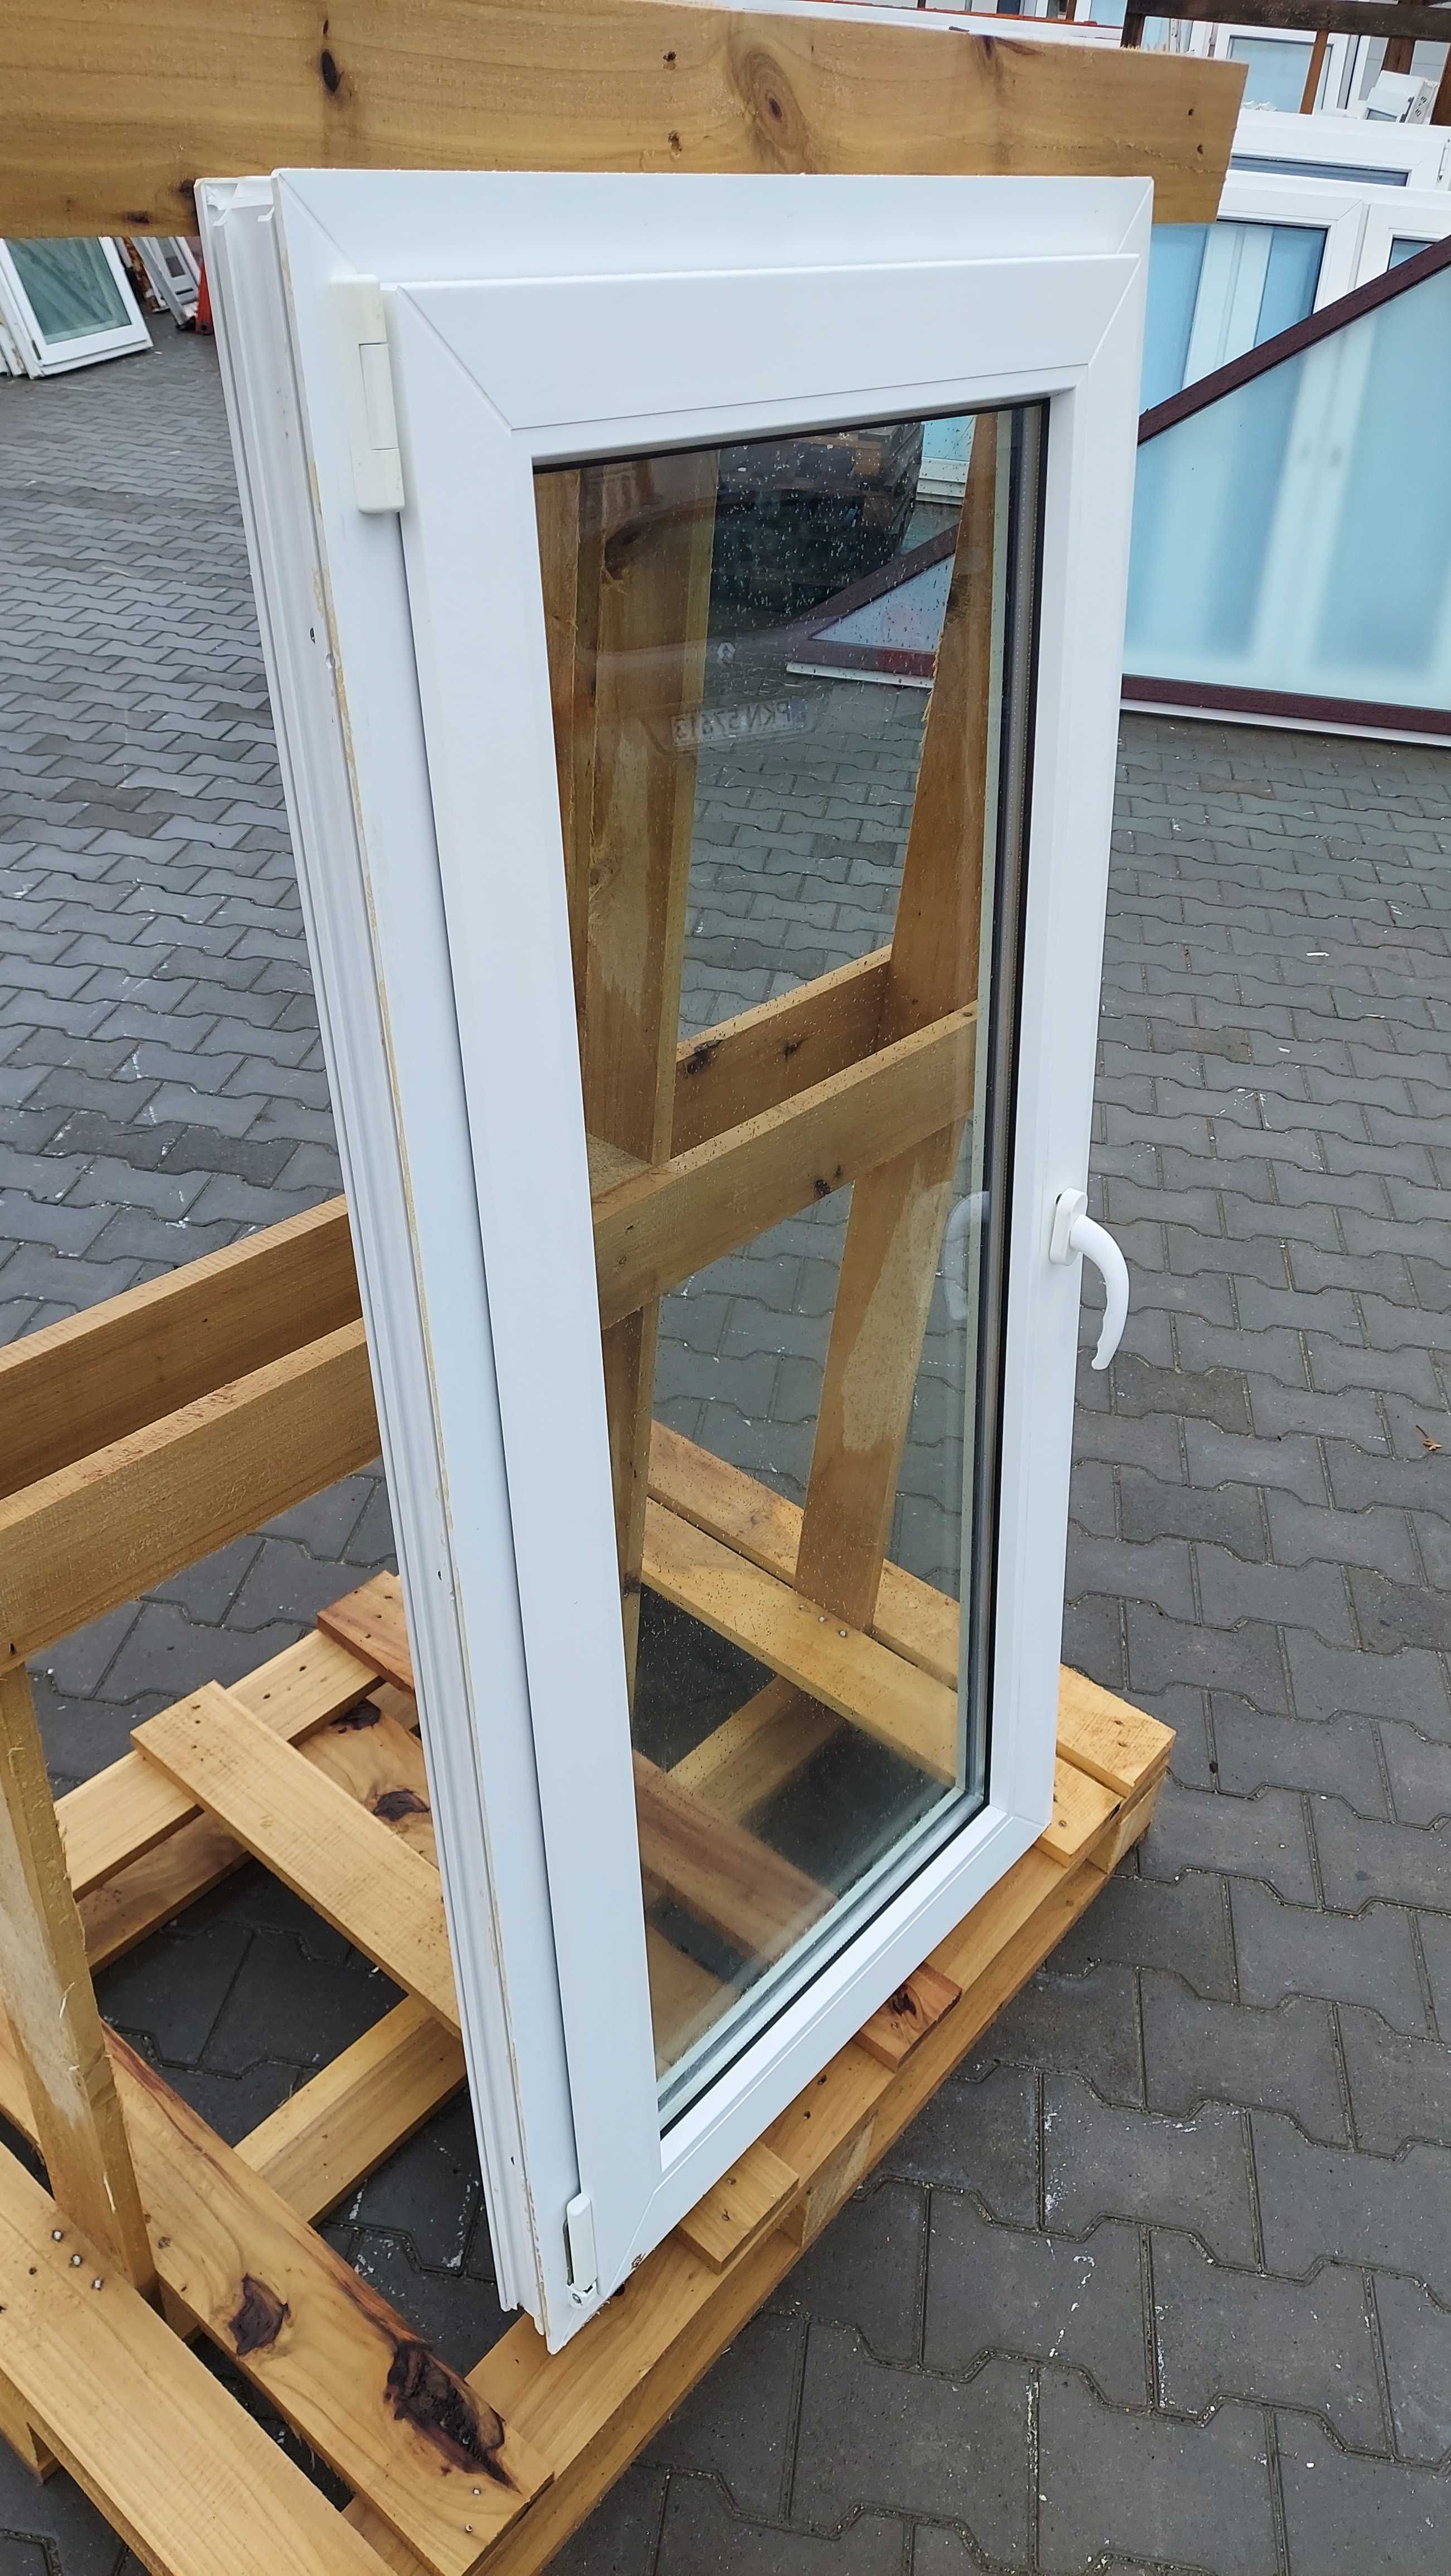 Okna UŻYWANE z Niemiec - 71x143 - gotowe do montażu - Dowóz PL